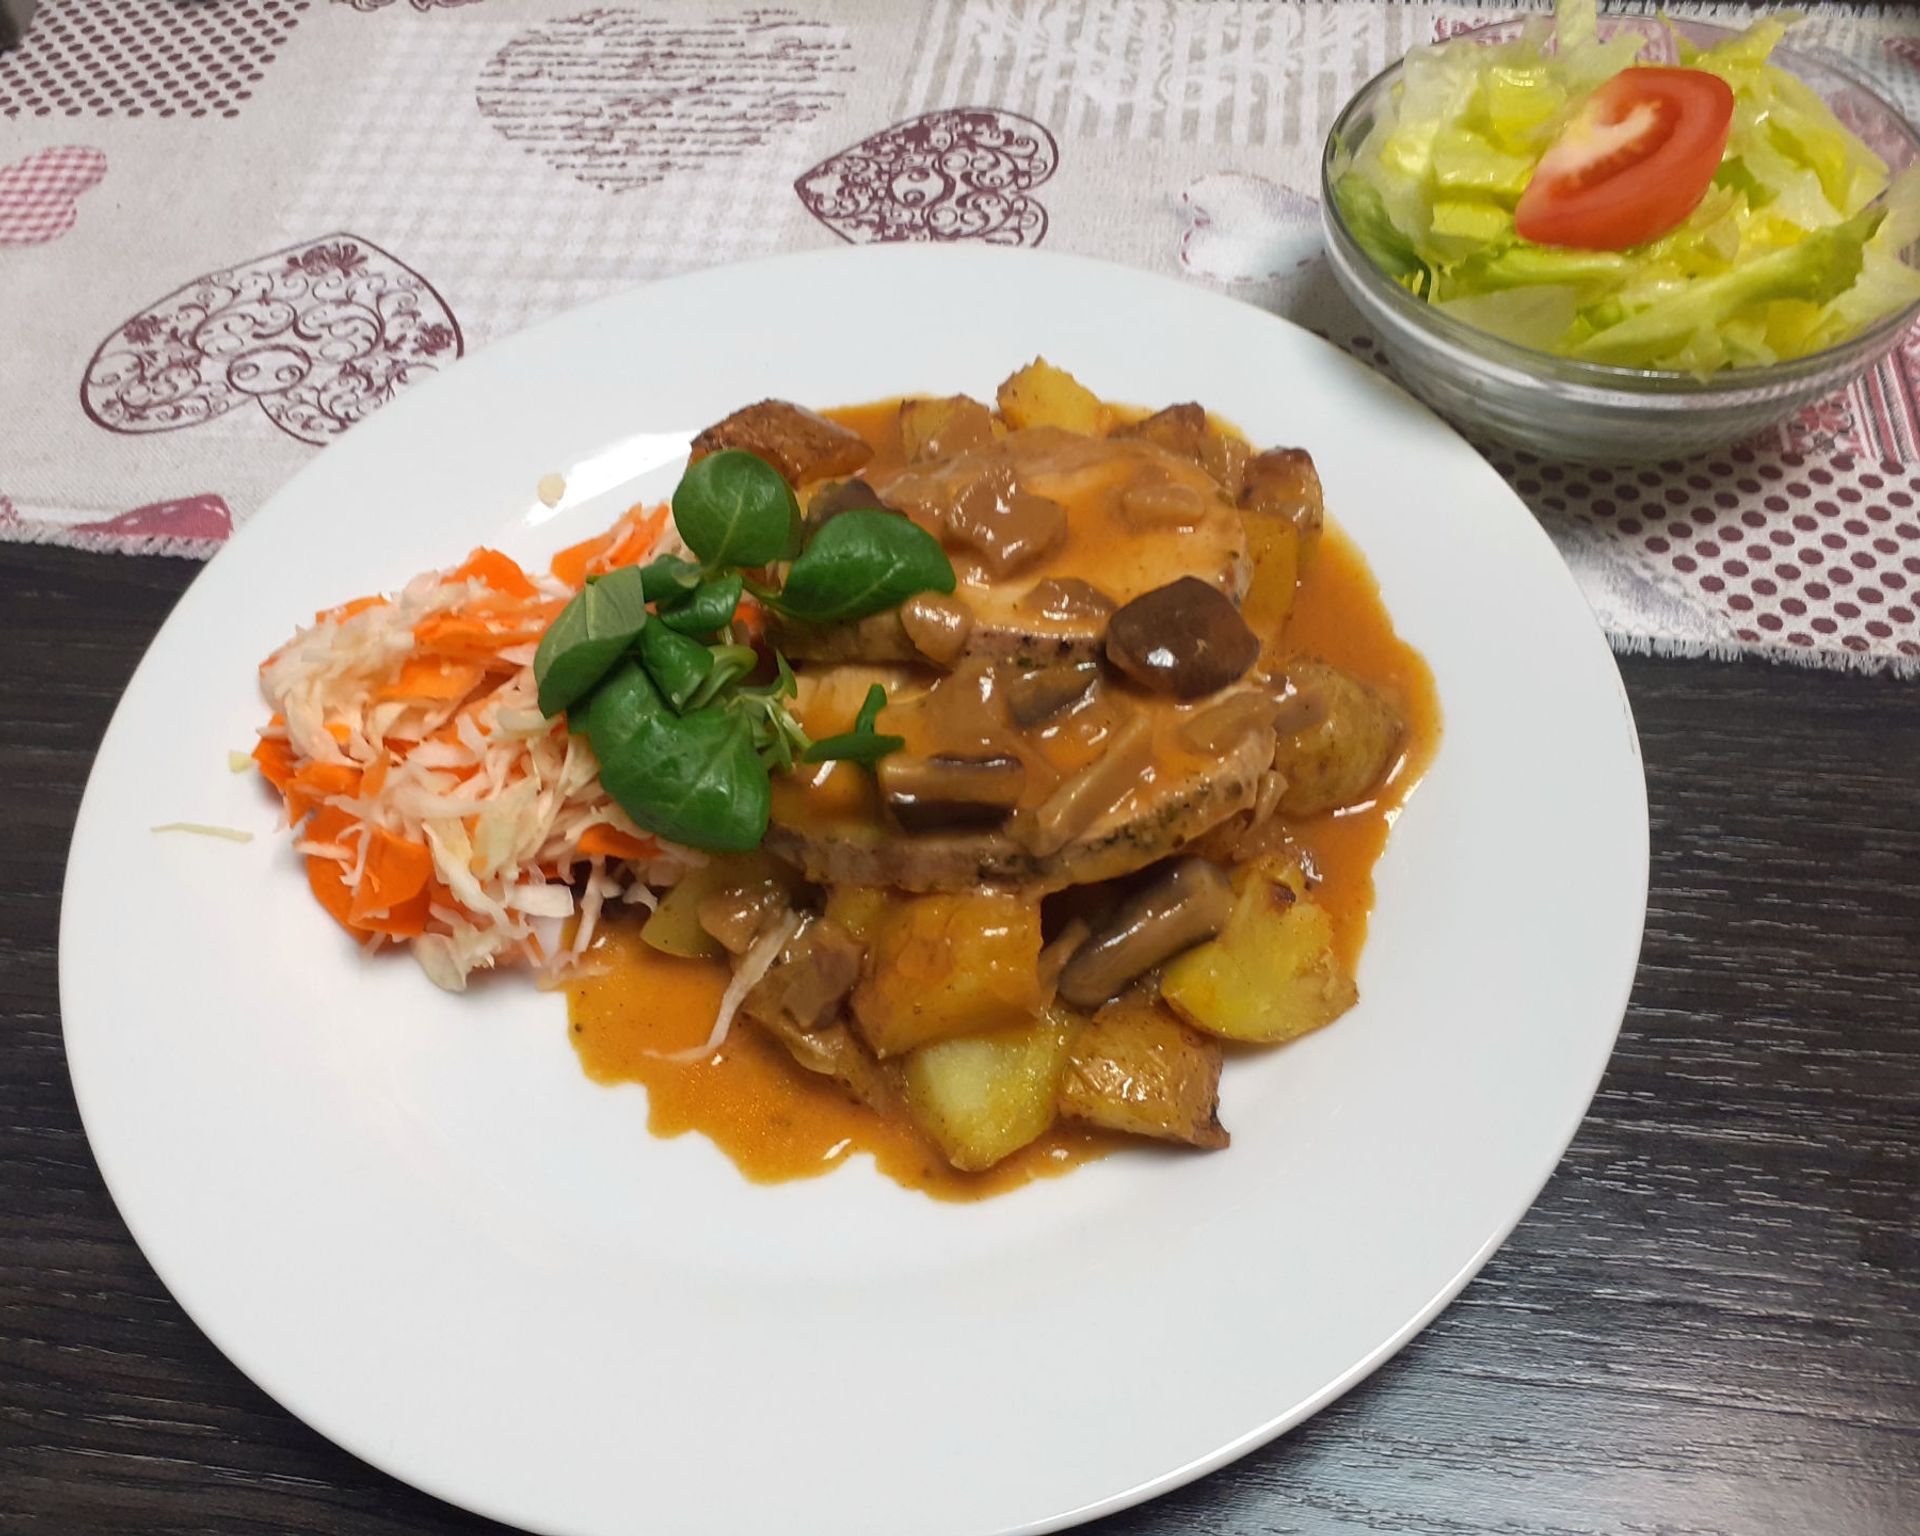 Hubové bravčové mäsko s omáčkou, varené zemiaky v šupke s mrkvovo-kapustovým šalátikom, v pozadí hlávkový šalát s paradajkou